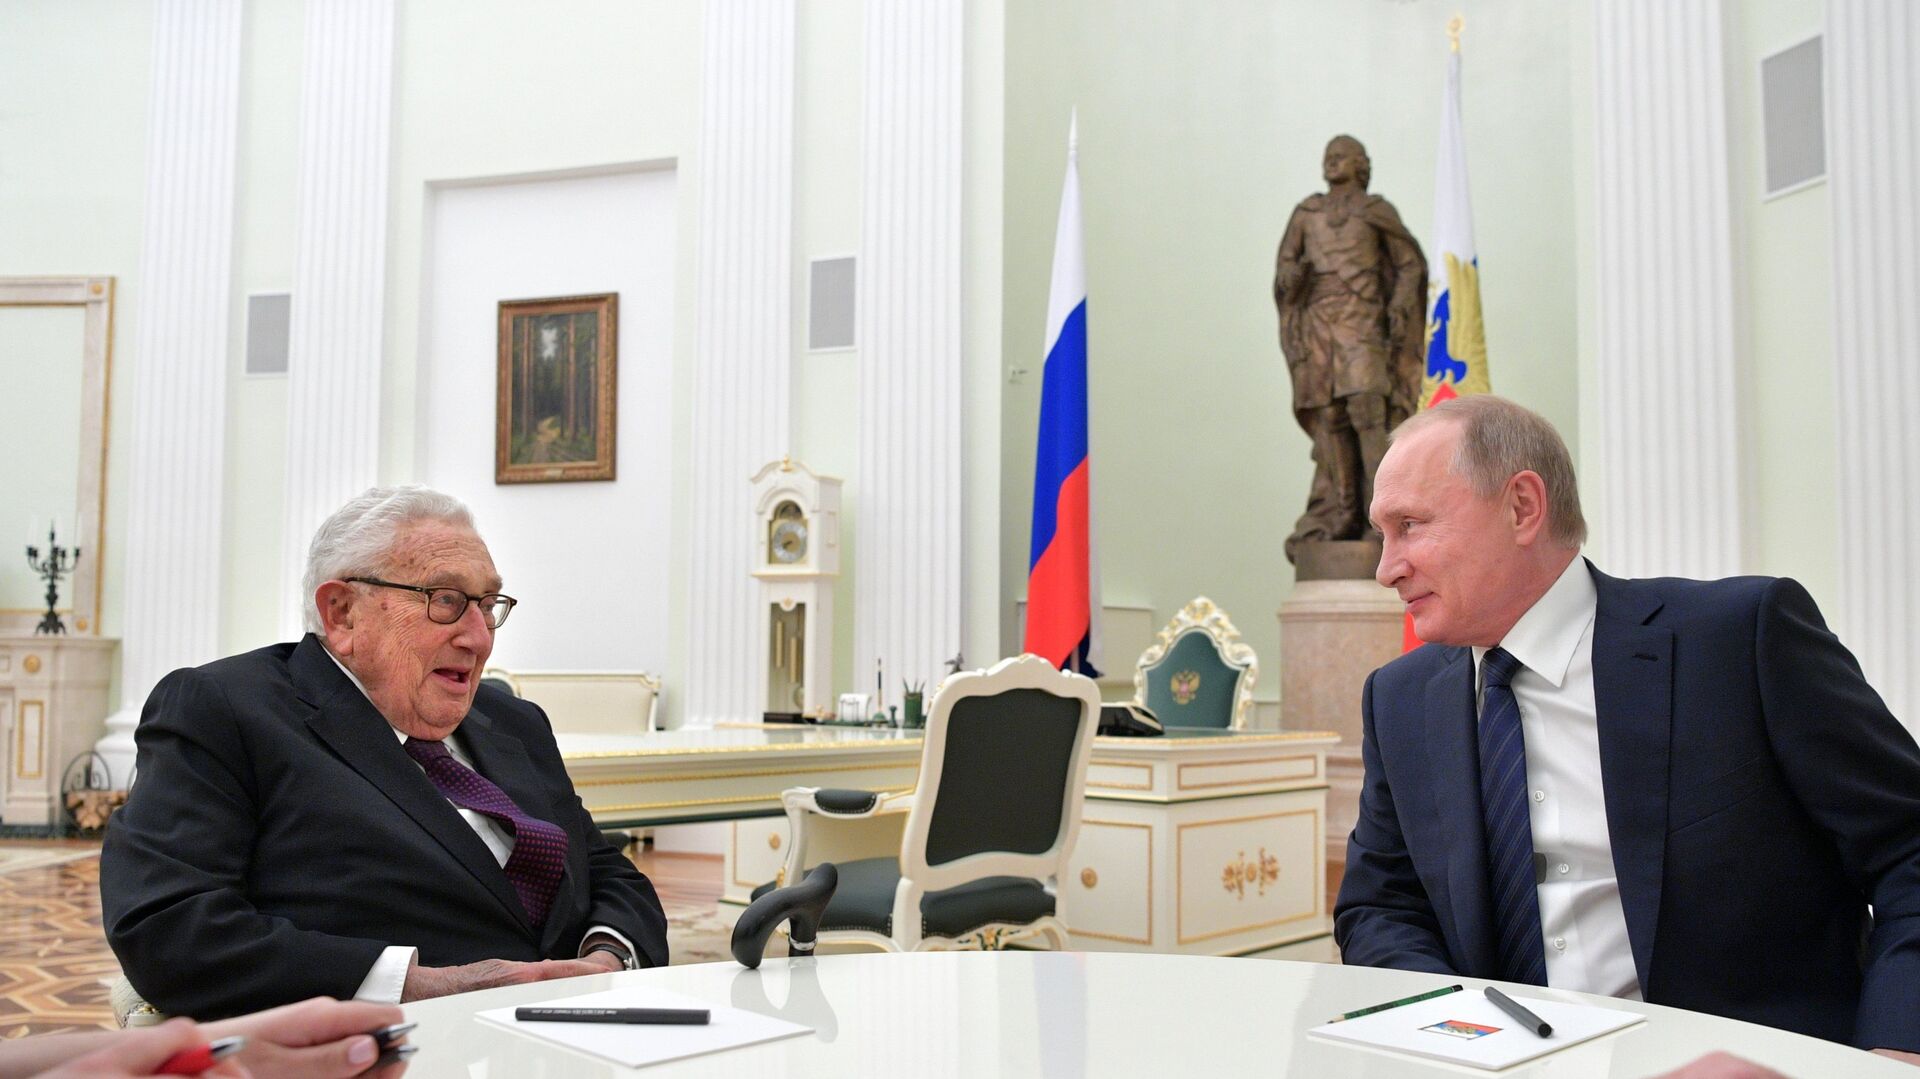 Бывший госсекретарь США Генри Киссинджер и президент РФ Владимир Путин во время встречи в Кремле. 29 июня 2017 - ИноСМИ, 1920, 24.05.2022